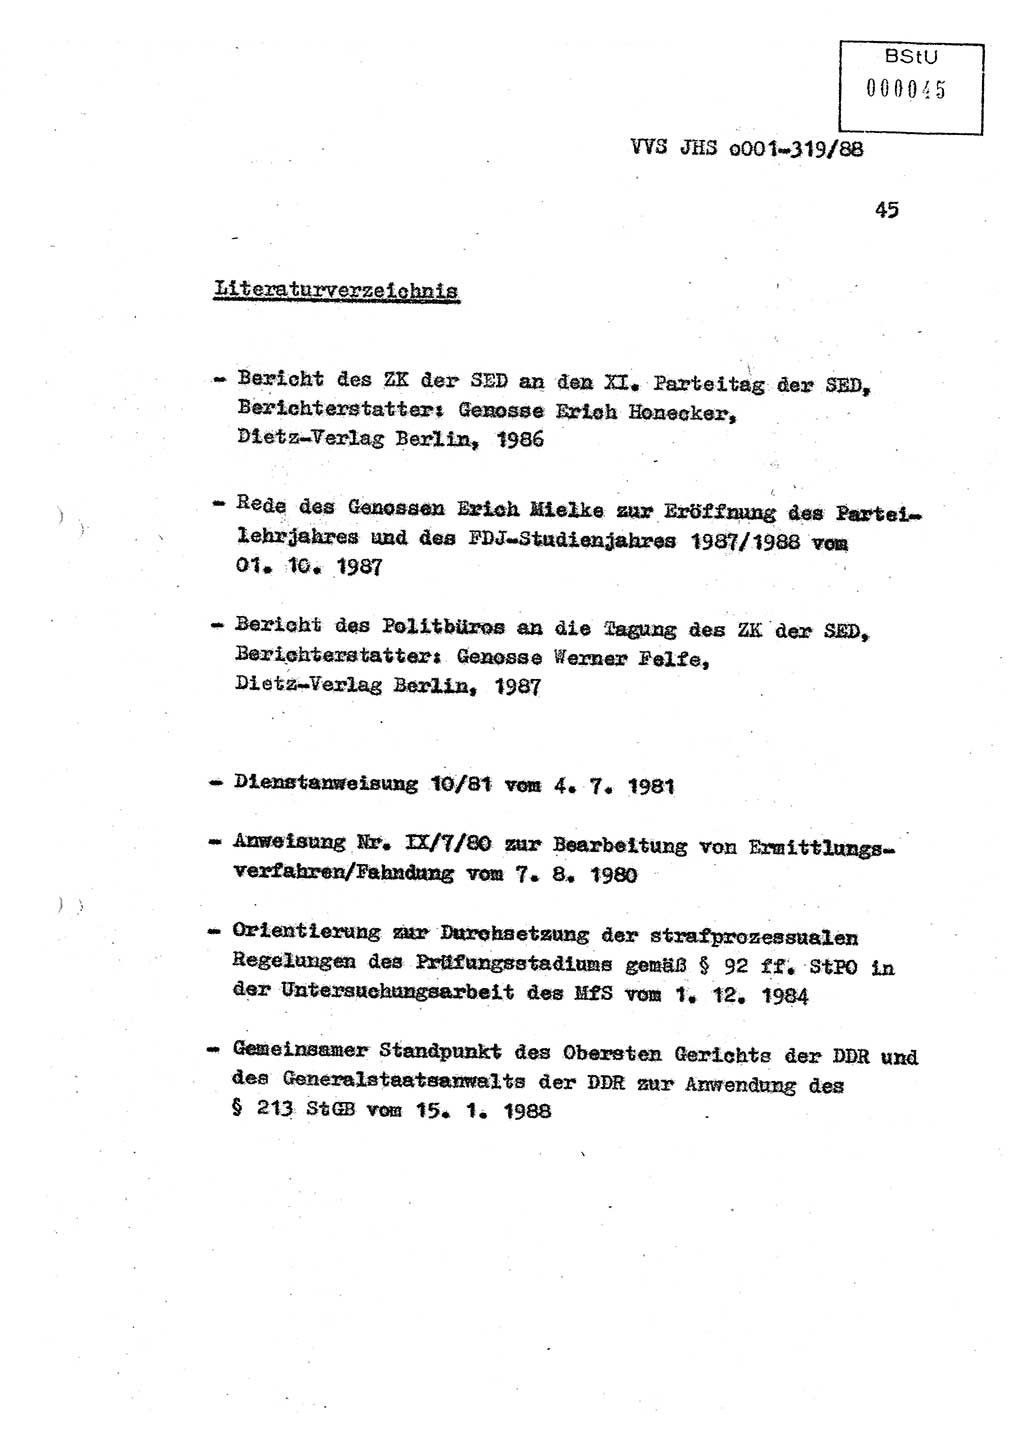 Diplomarbeit Offiziersschüler Holger Zirnstein (HA Ⅸ/9), Ministerium für Staatssicherheit (MfS) [Deutsche Demokratische Republik (DDR)], Juristische Hochschule (JHS), Vertrauliche Verschlußsache (VVS) o001-319/88, Potsdam 1988, Blatt 45 (Dipl.-Arb. MfS DDR JHS VVS o001-319/88 1988, Bl. 45)